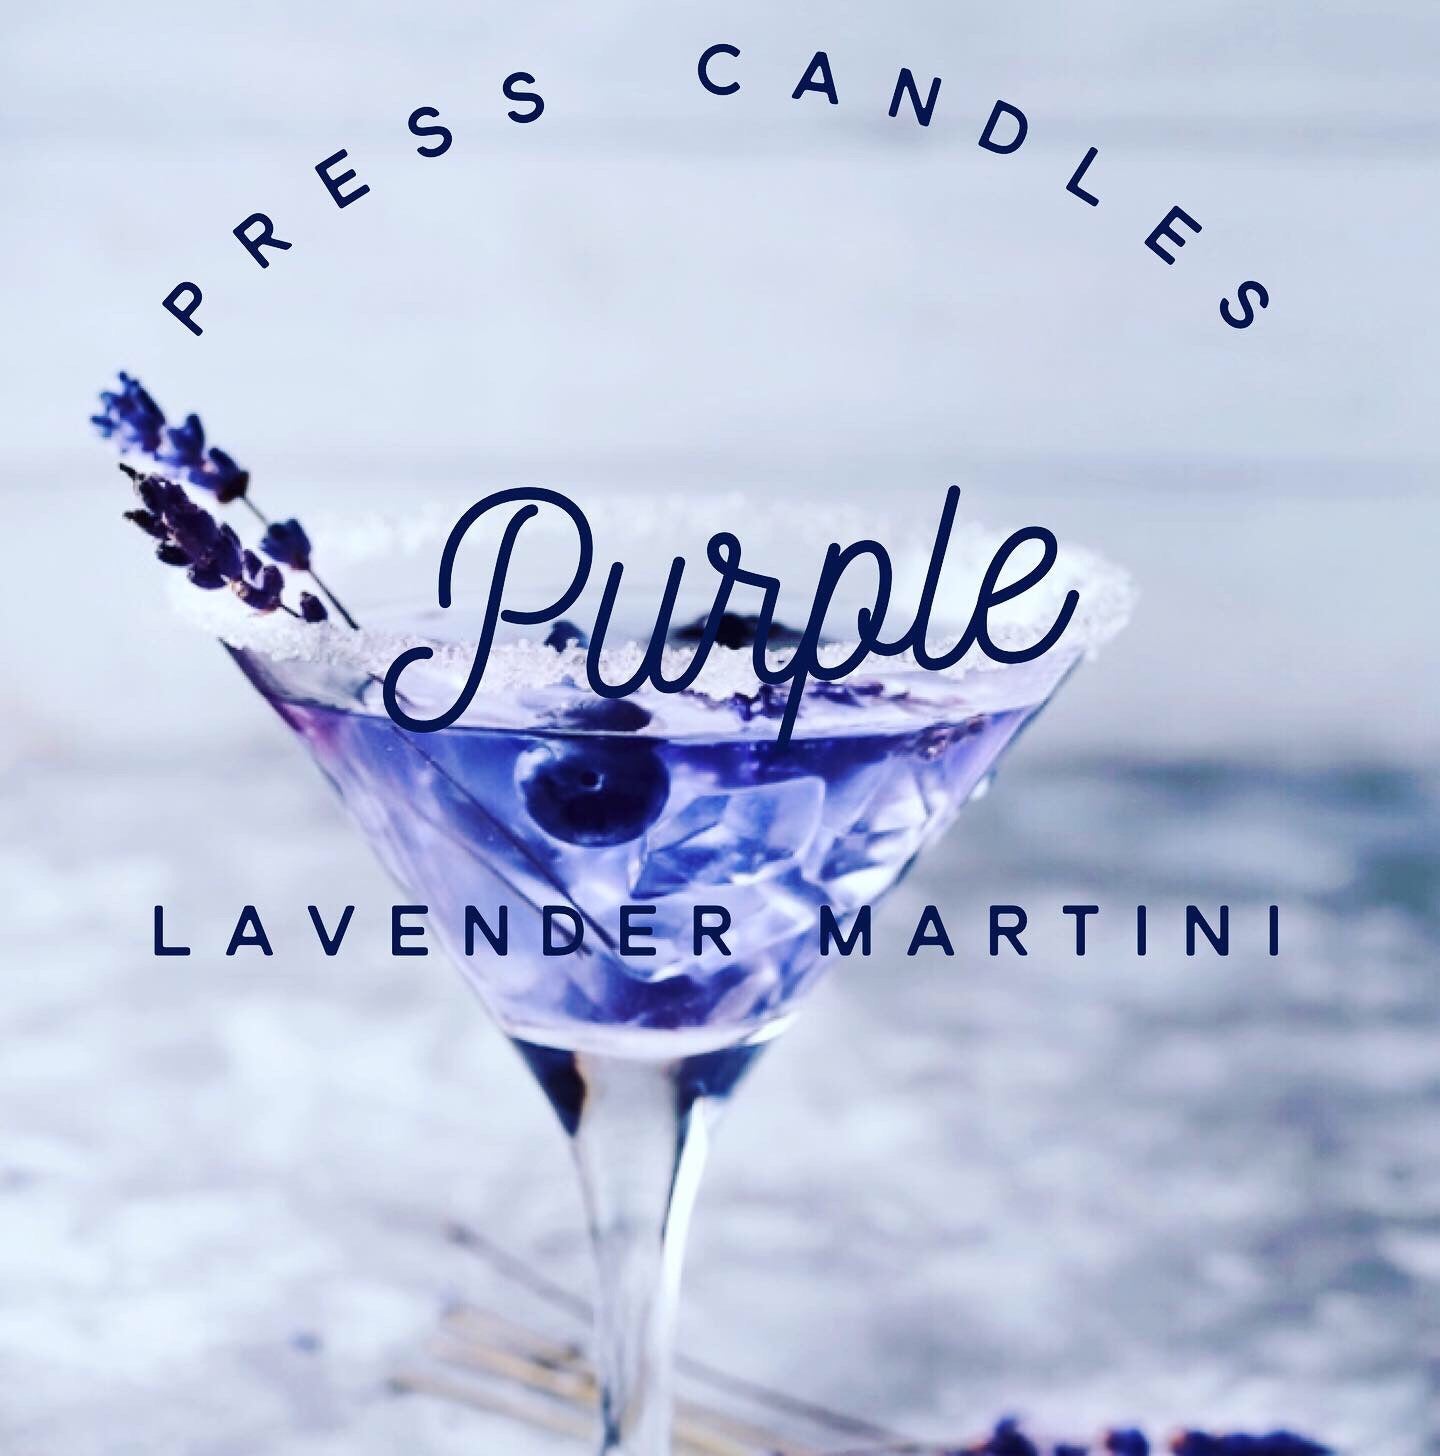 Purple lavender martini